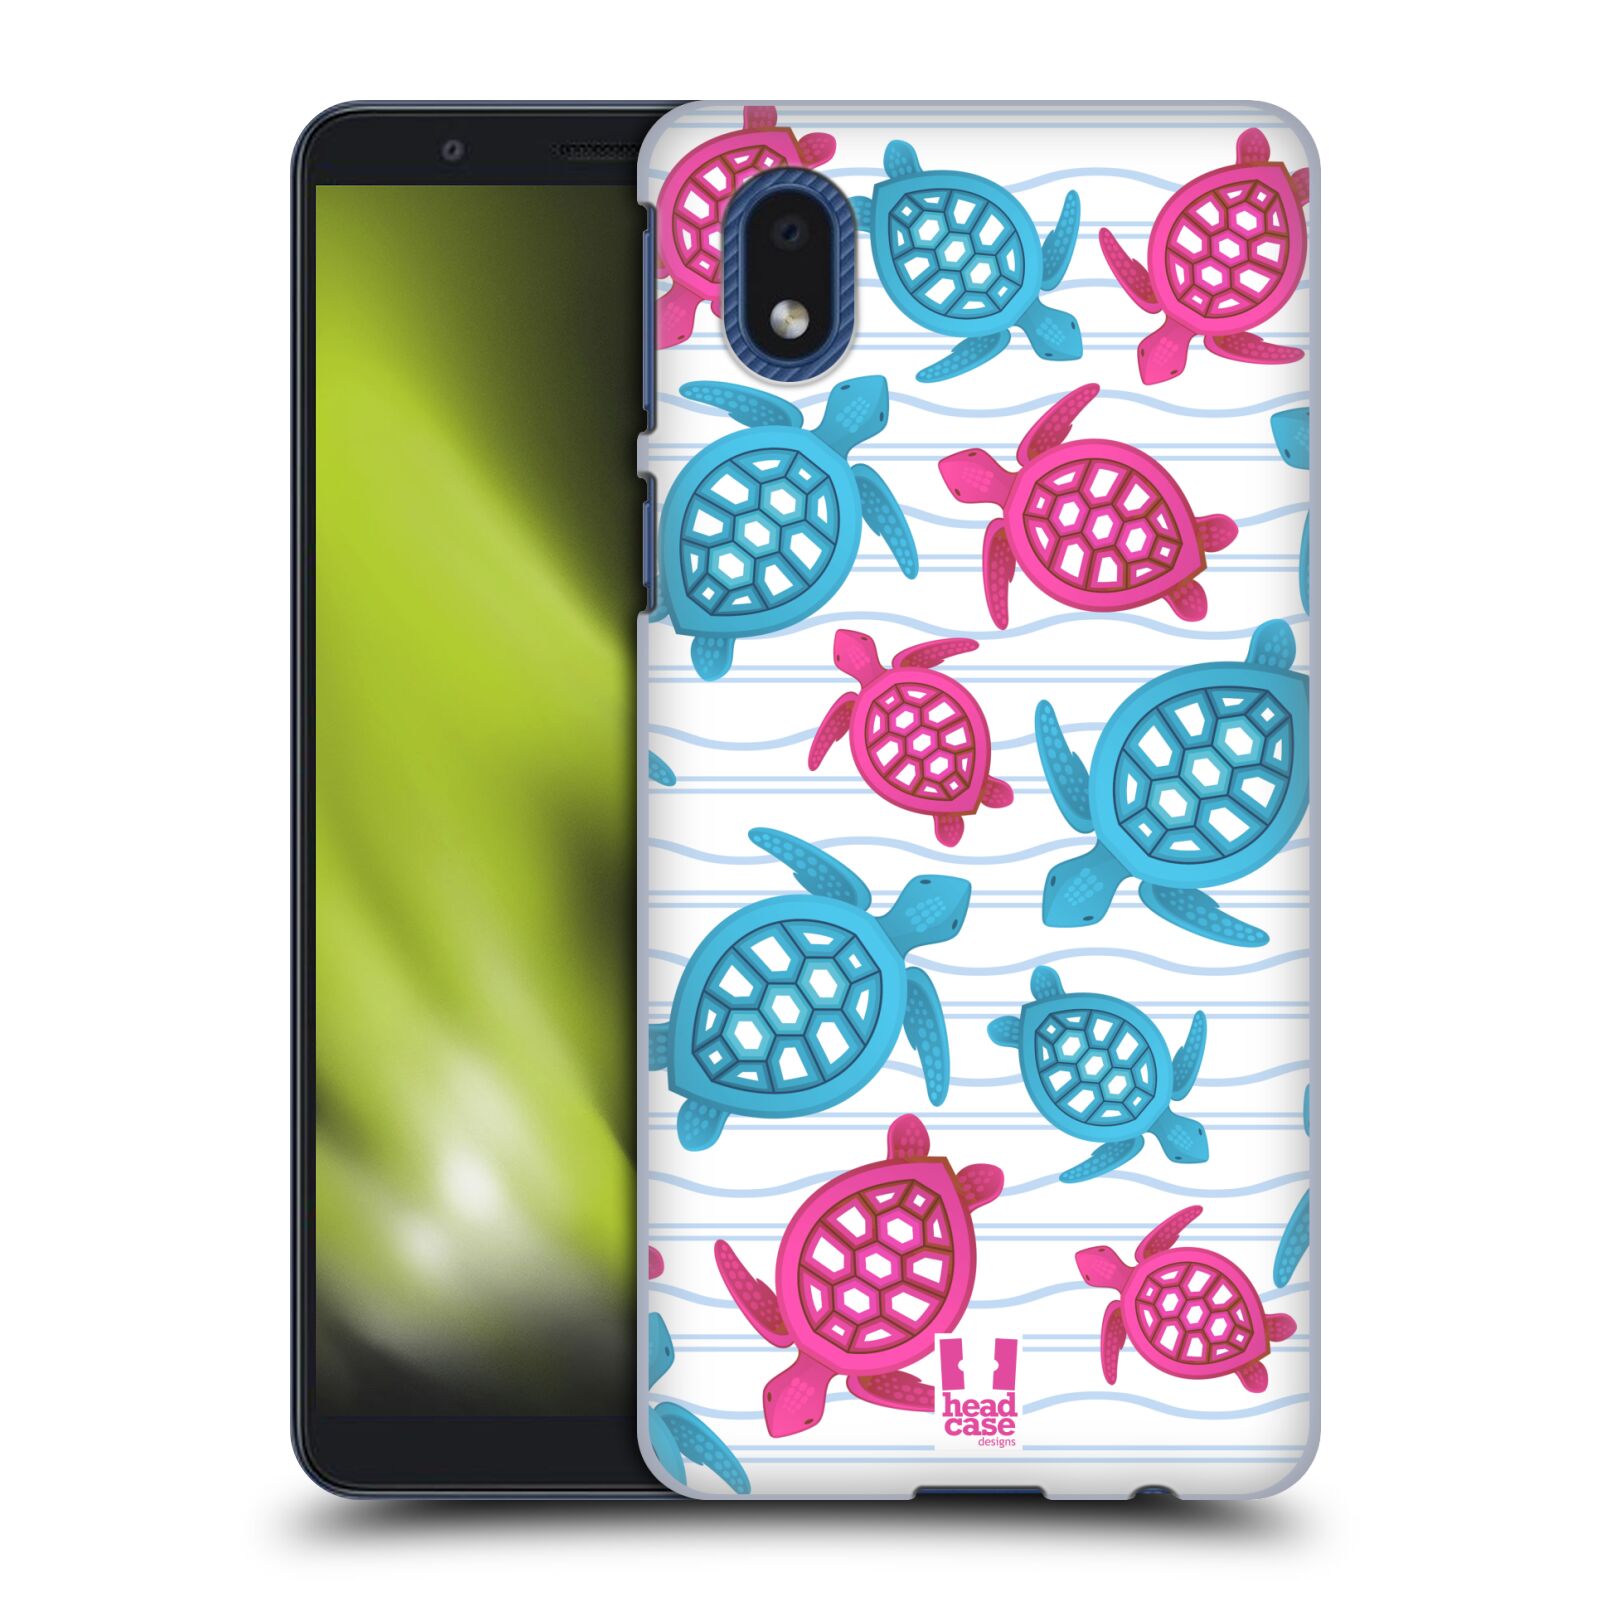 Zadní obal pro mobil Samsung Galaxy A01 CORE - HEAD CASE - kreslený mořský vzor želvičky